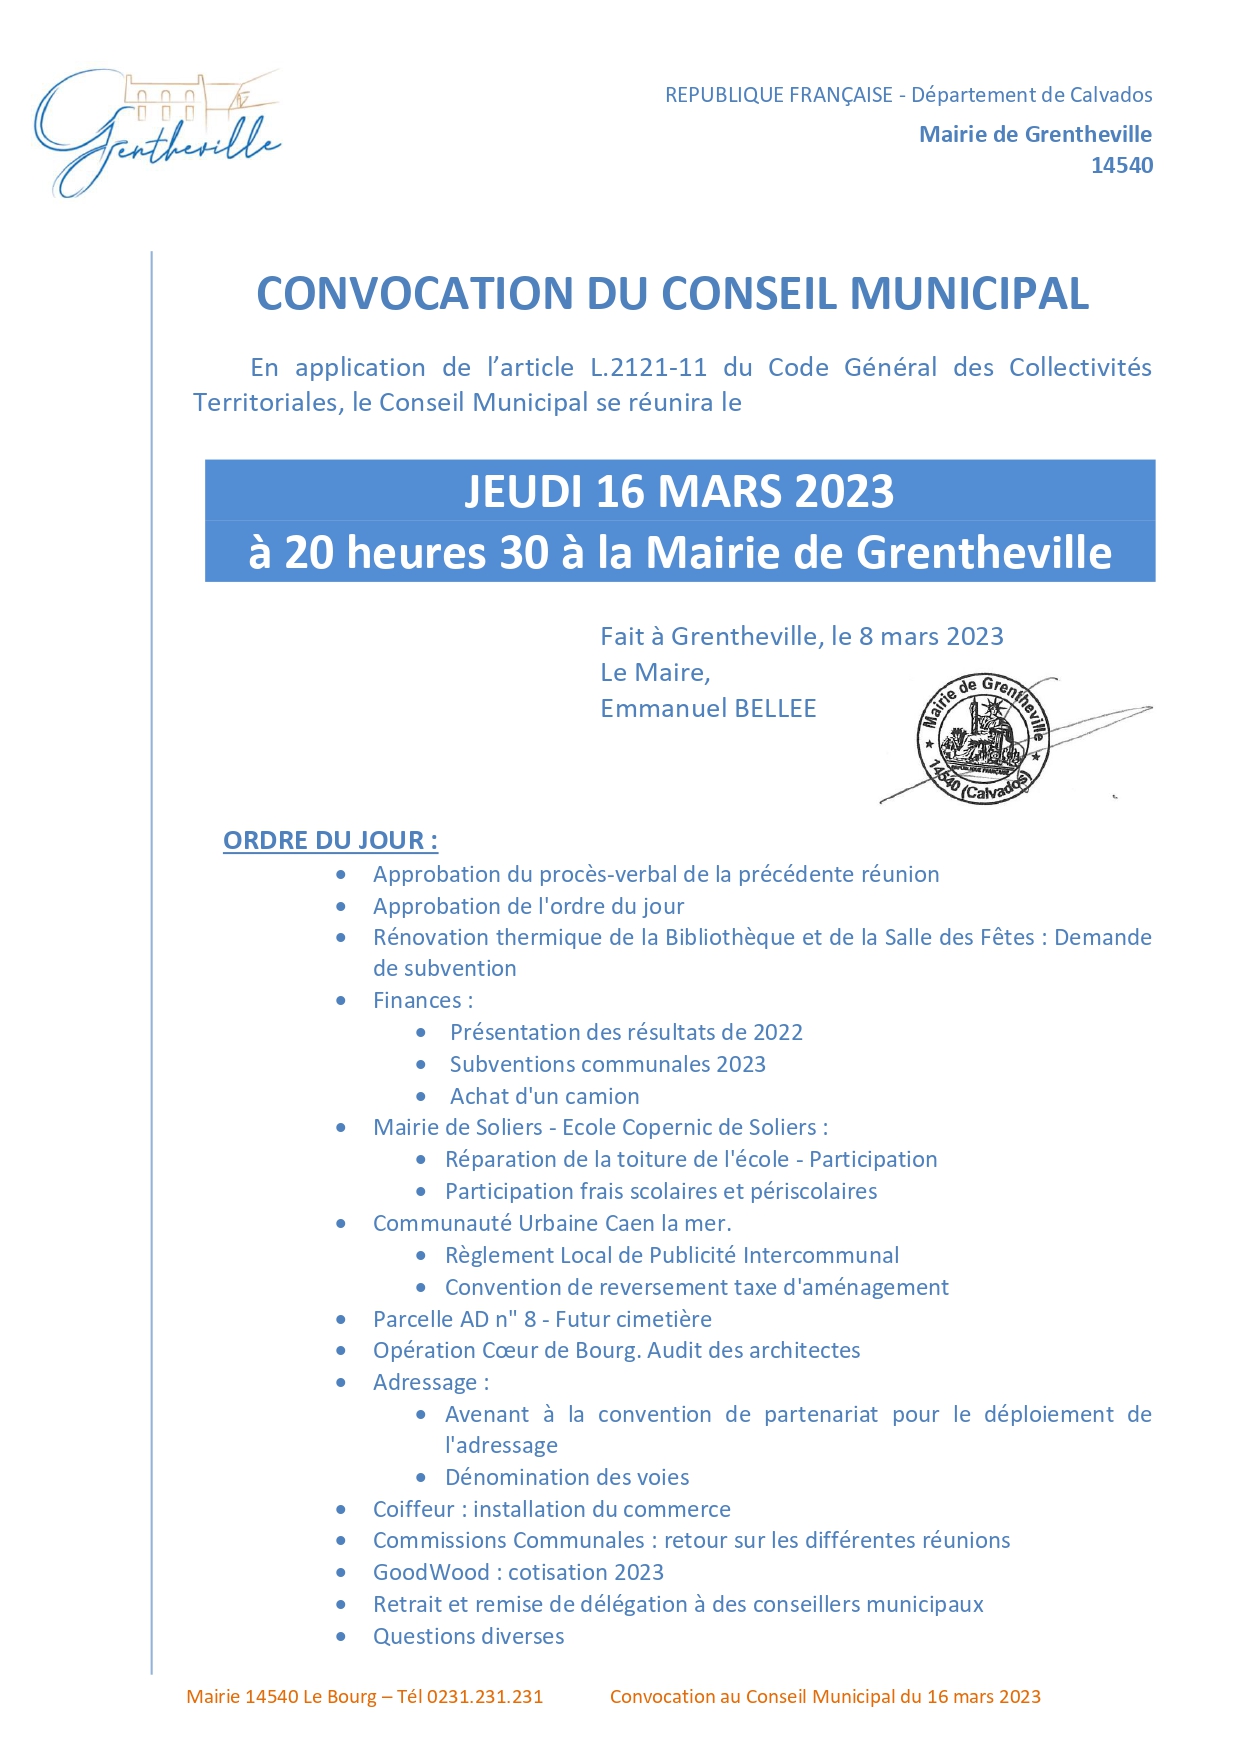 convocation-du-conseil-municipal-du-16-mars-2023_page-0001.jpg